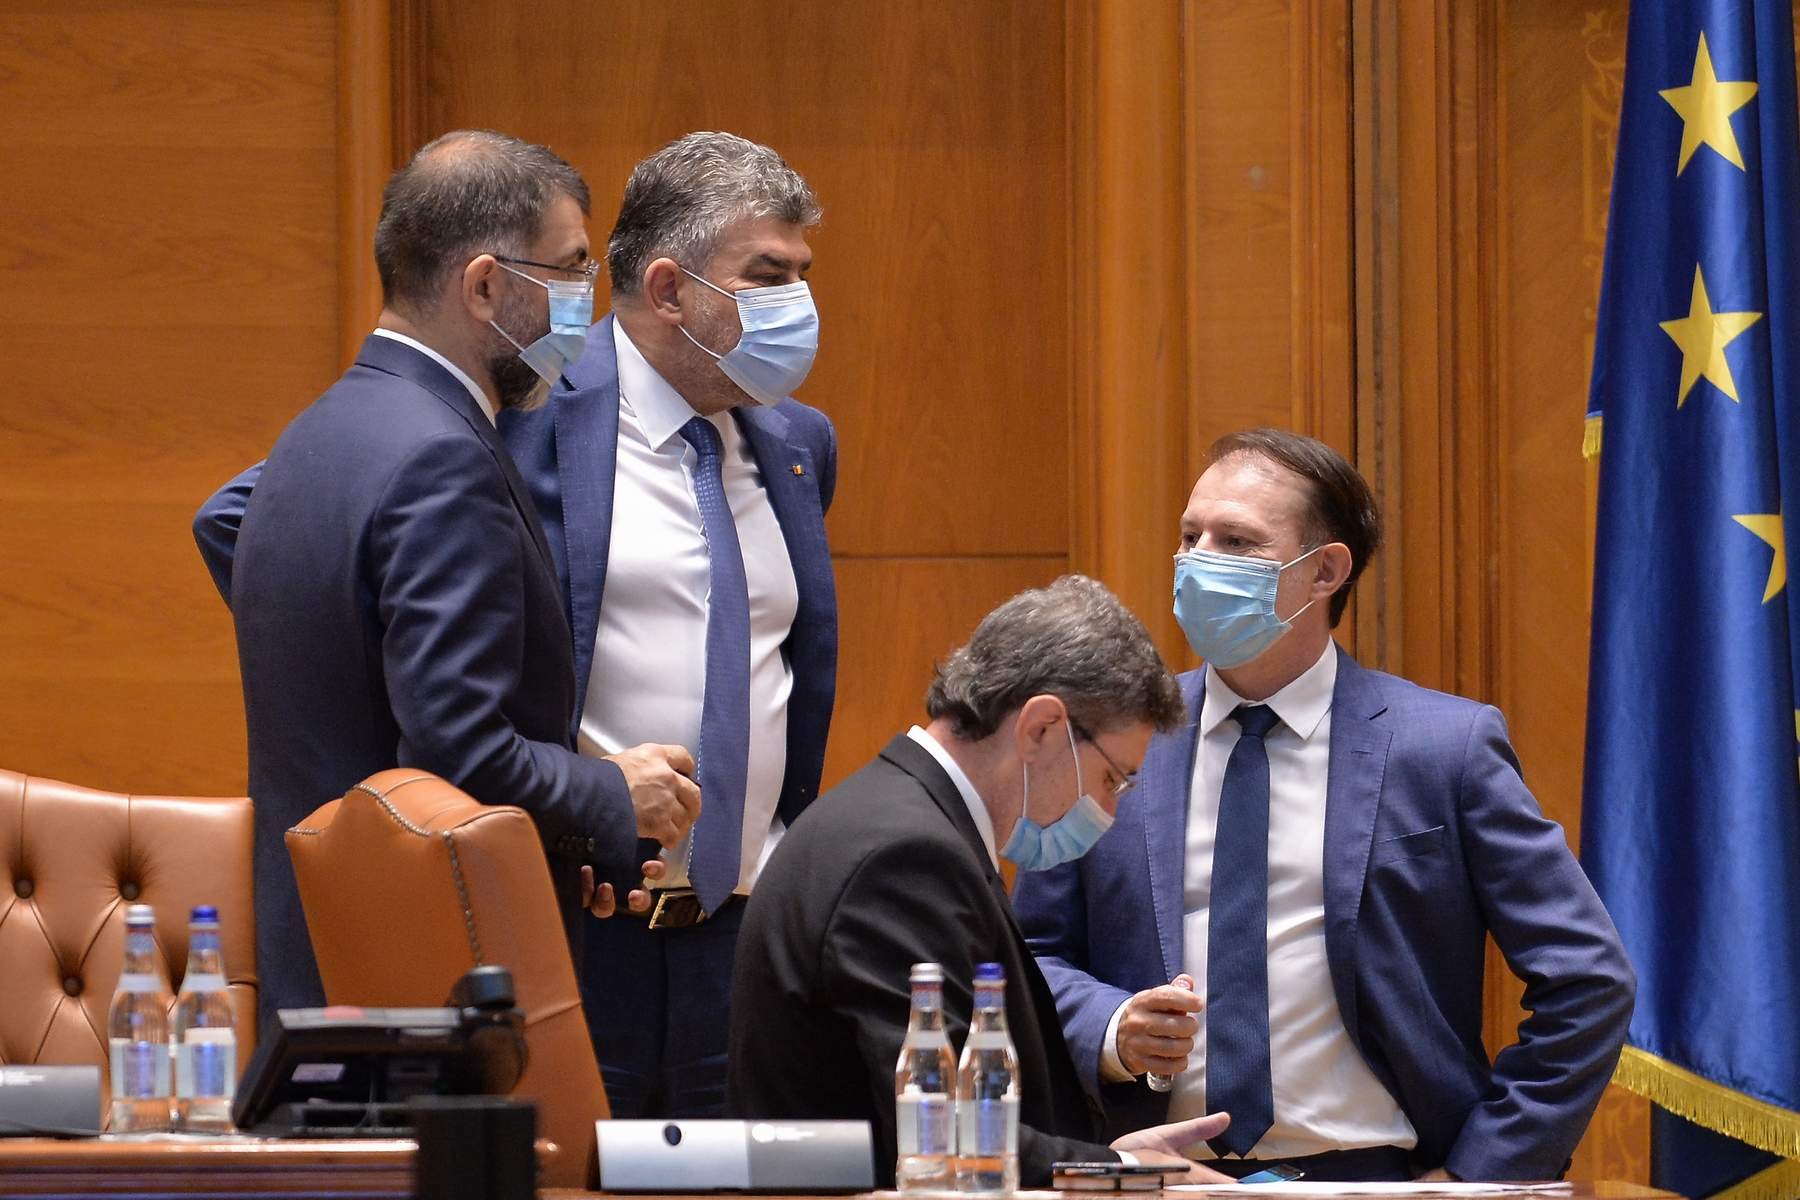  USR votează moţiunea PSD în care foştii miniştri Ghinea, Drulă şi Voiculescu sunt desfiinţaţi